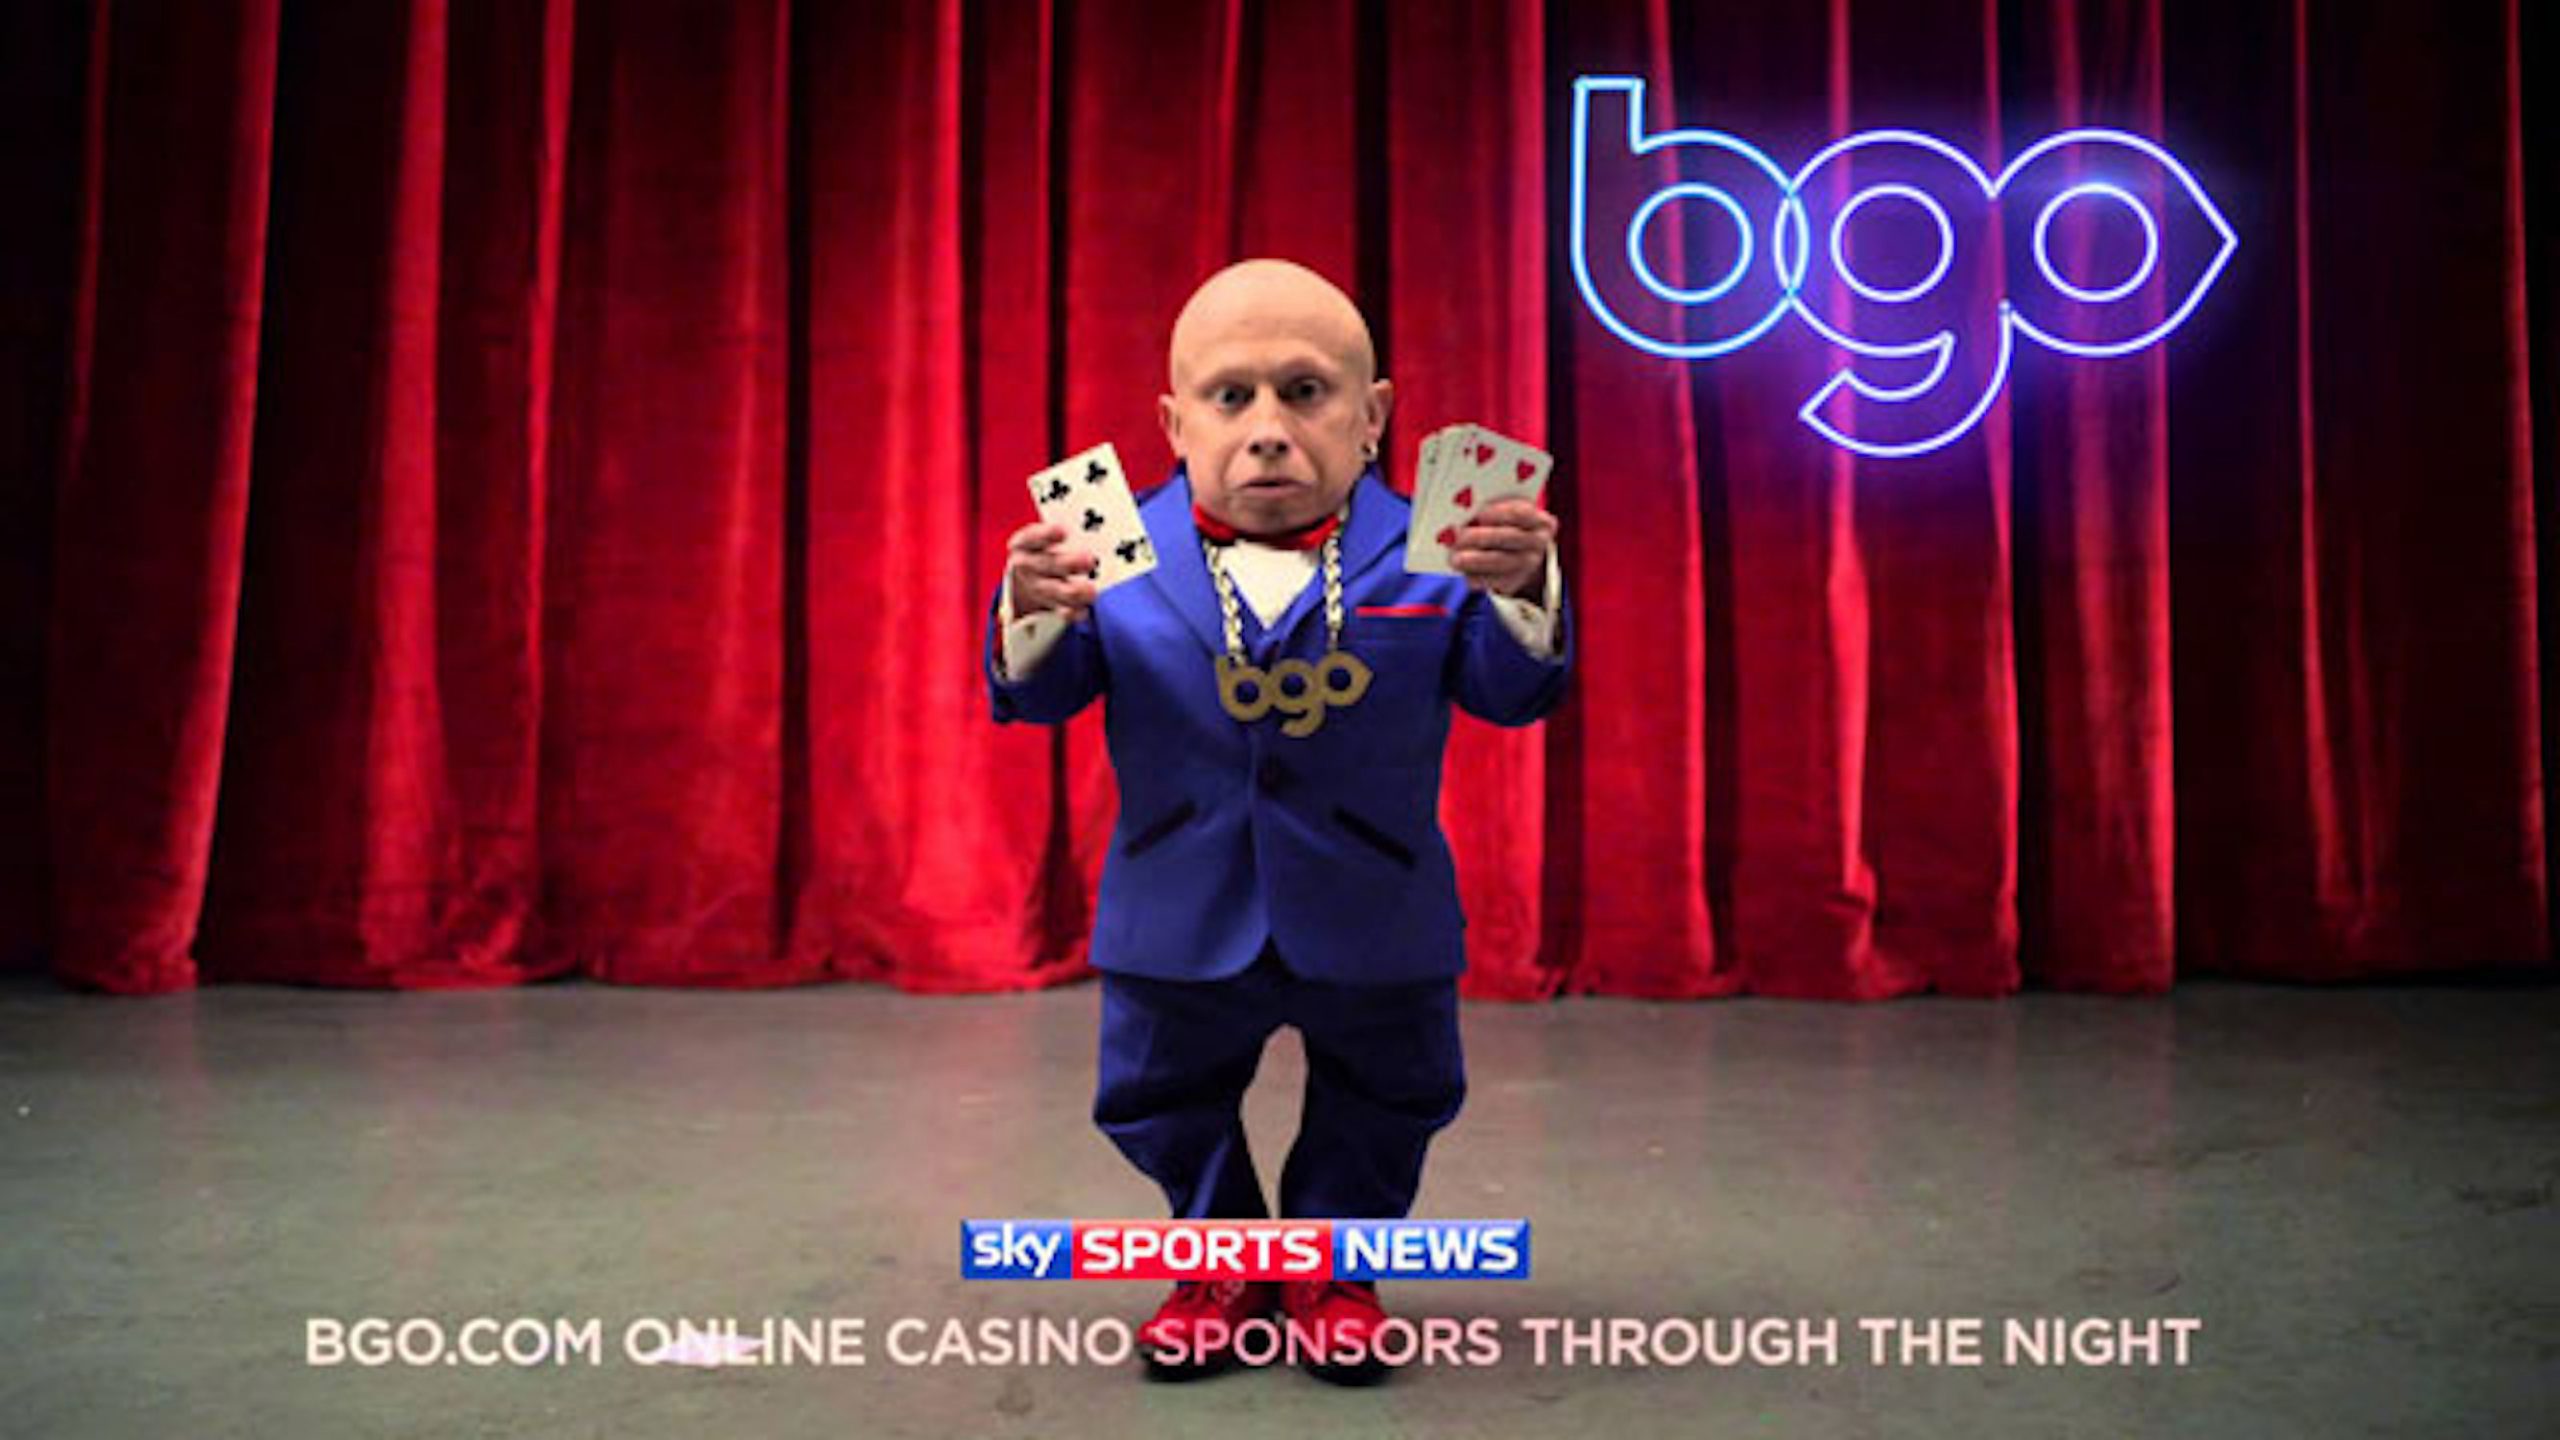 Bgo casino online за регистрацию бездепозитный бонус на игру в казино